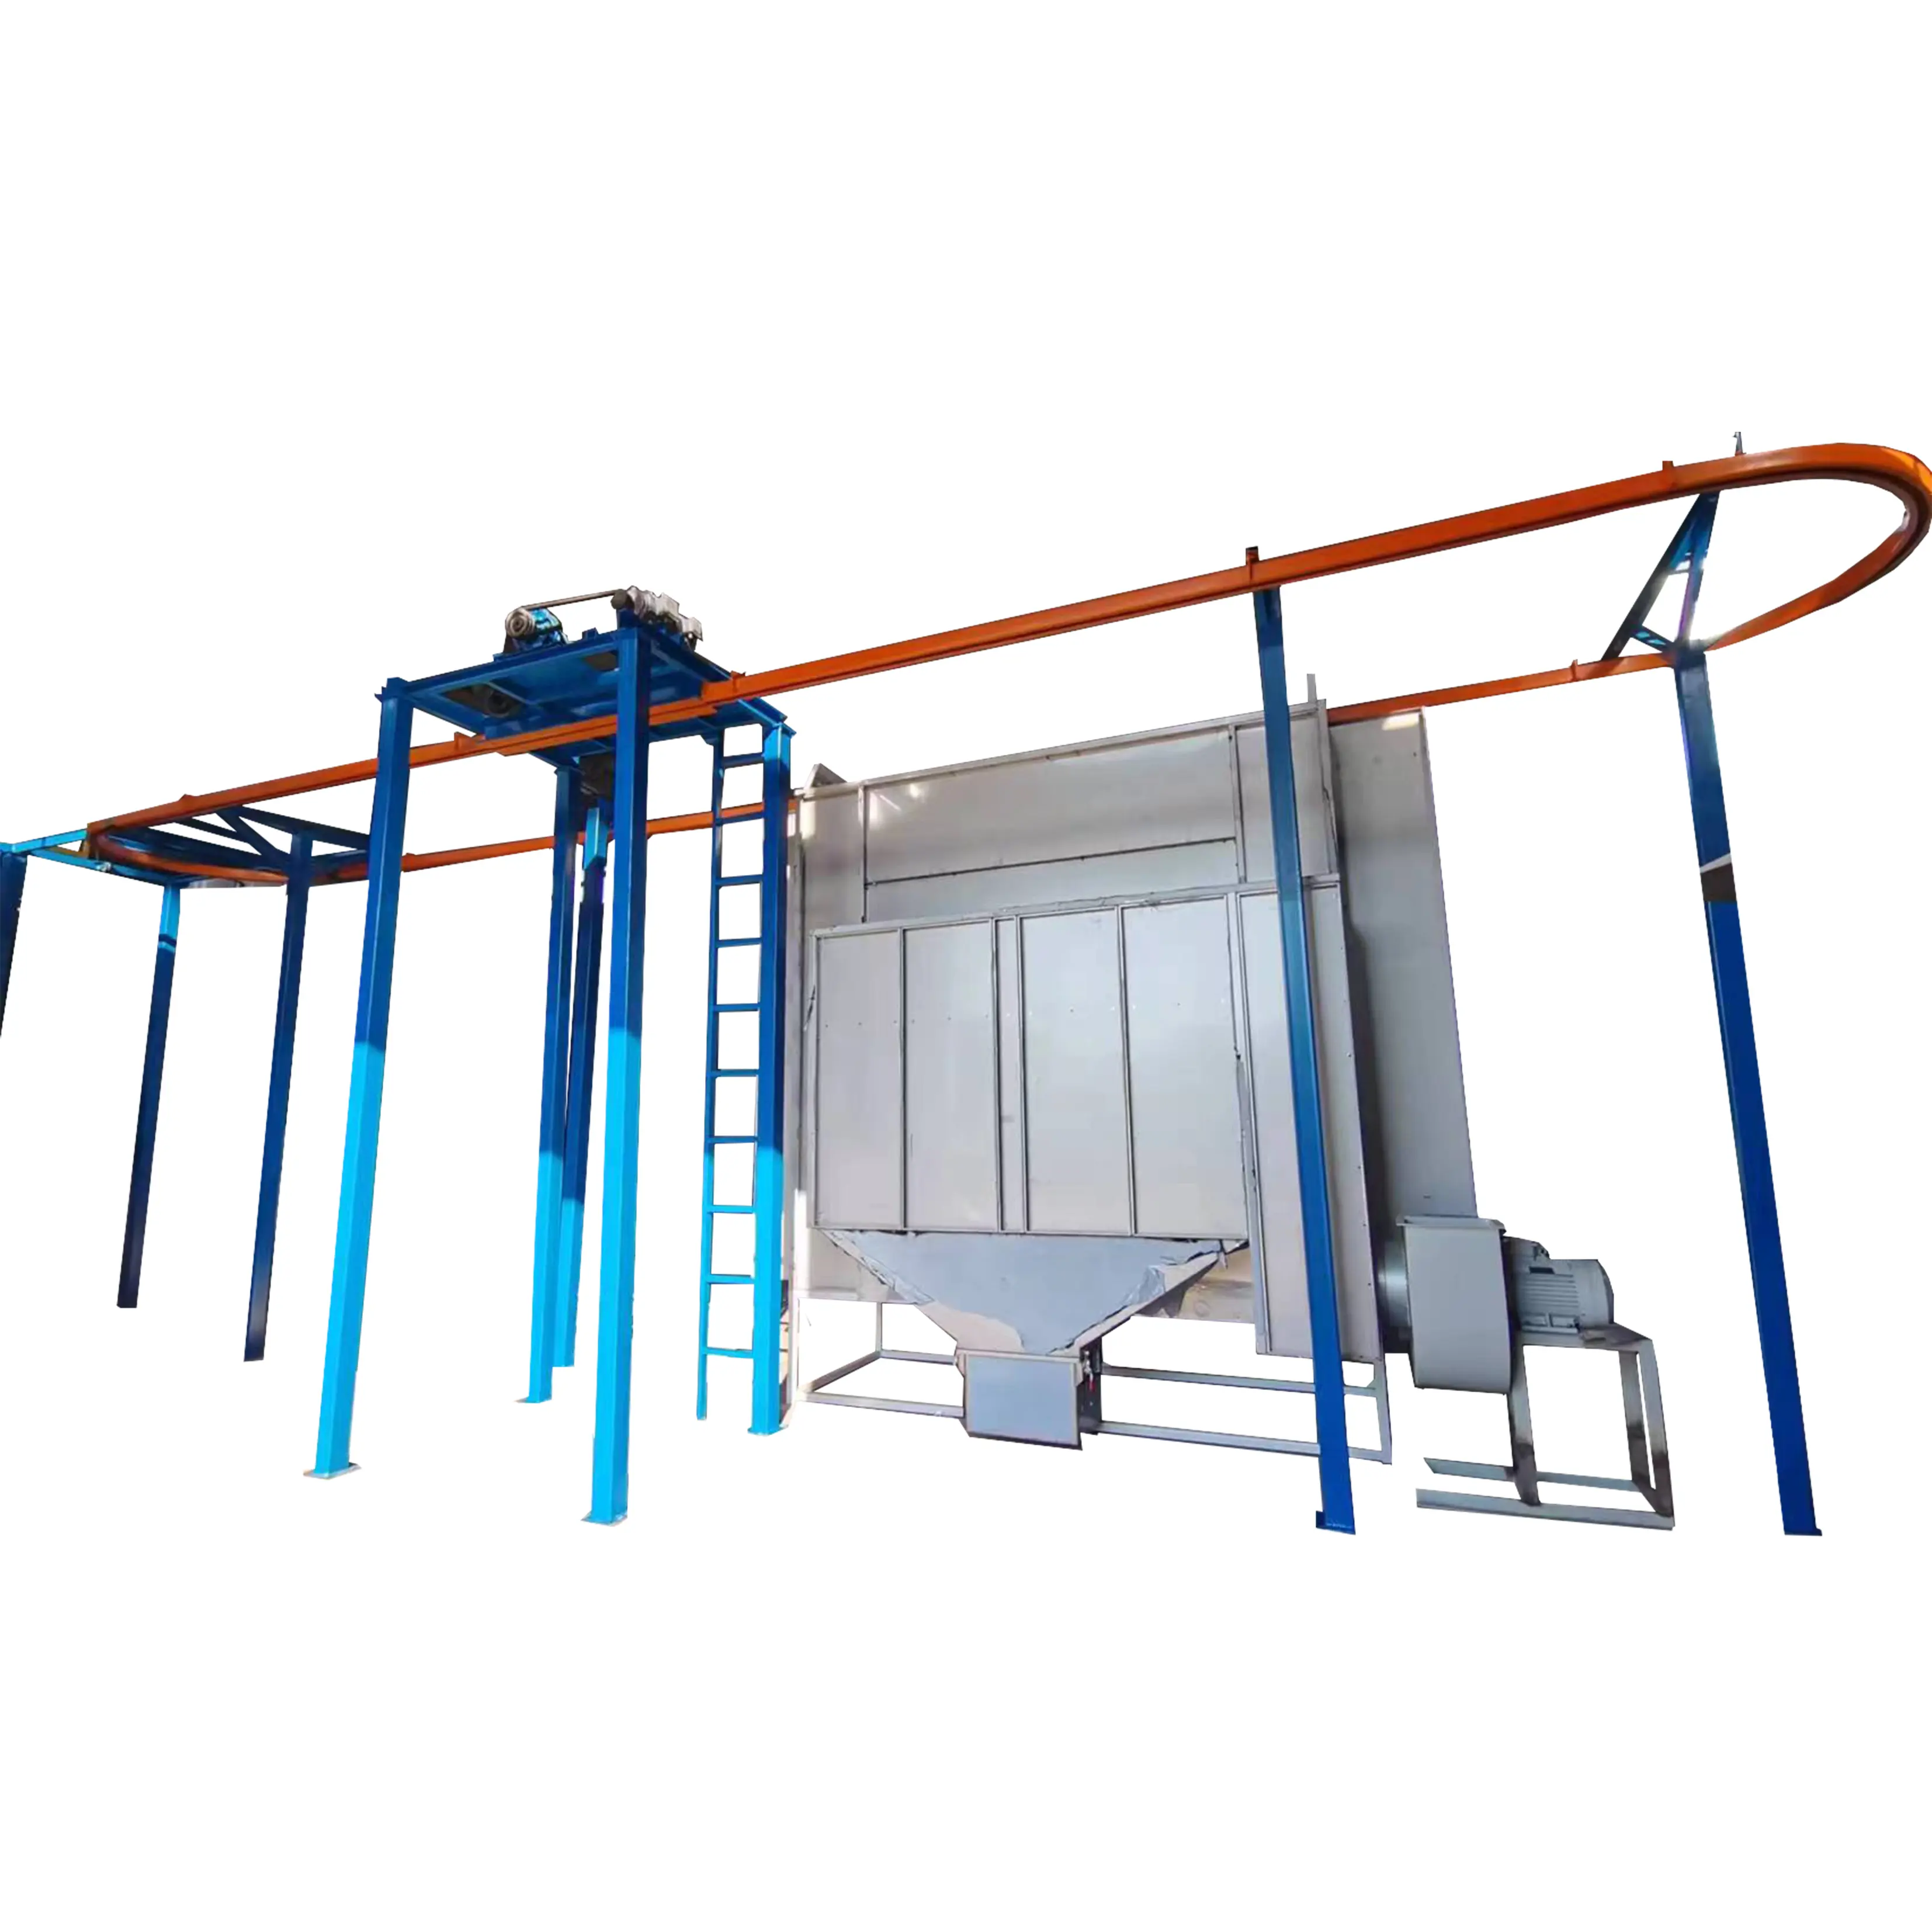 AILIN linea di produzione automatica di verniciatura a polvere linea di rivestimento in polvere sistemi di linea di vernice